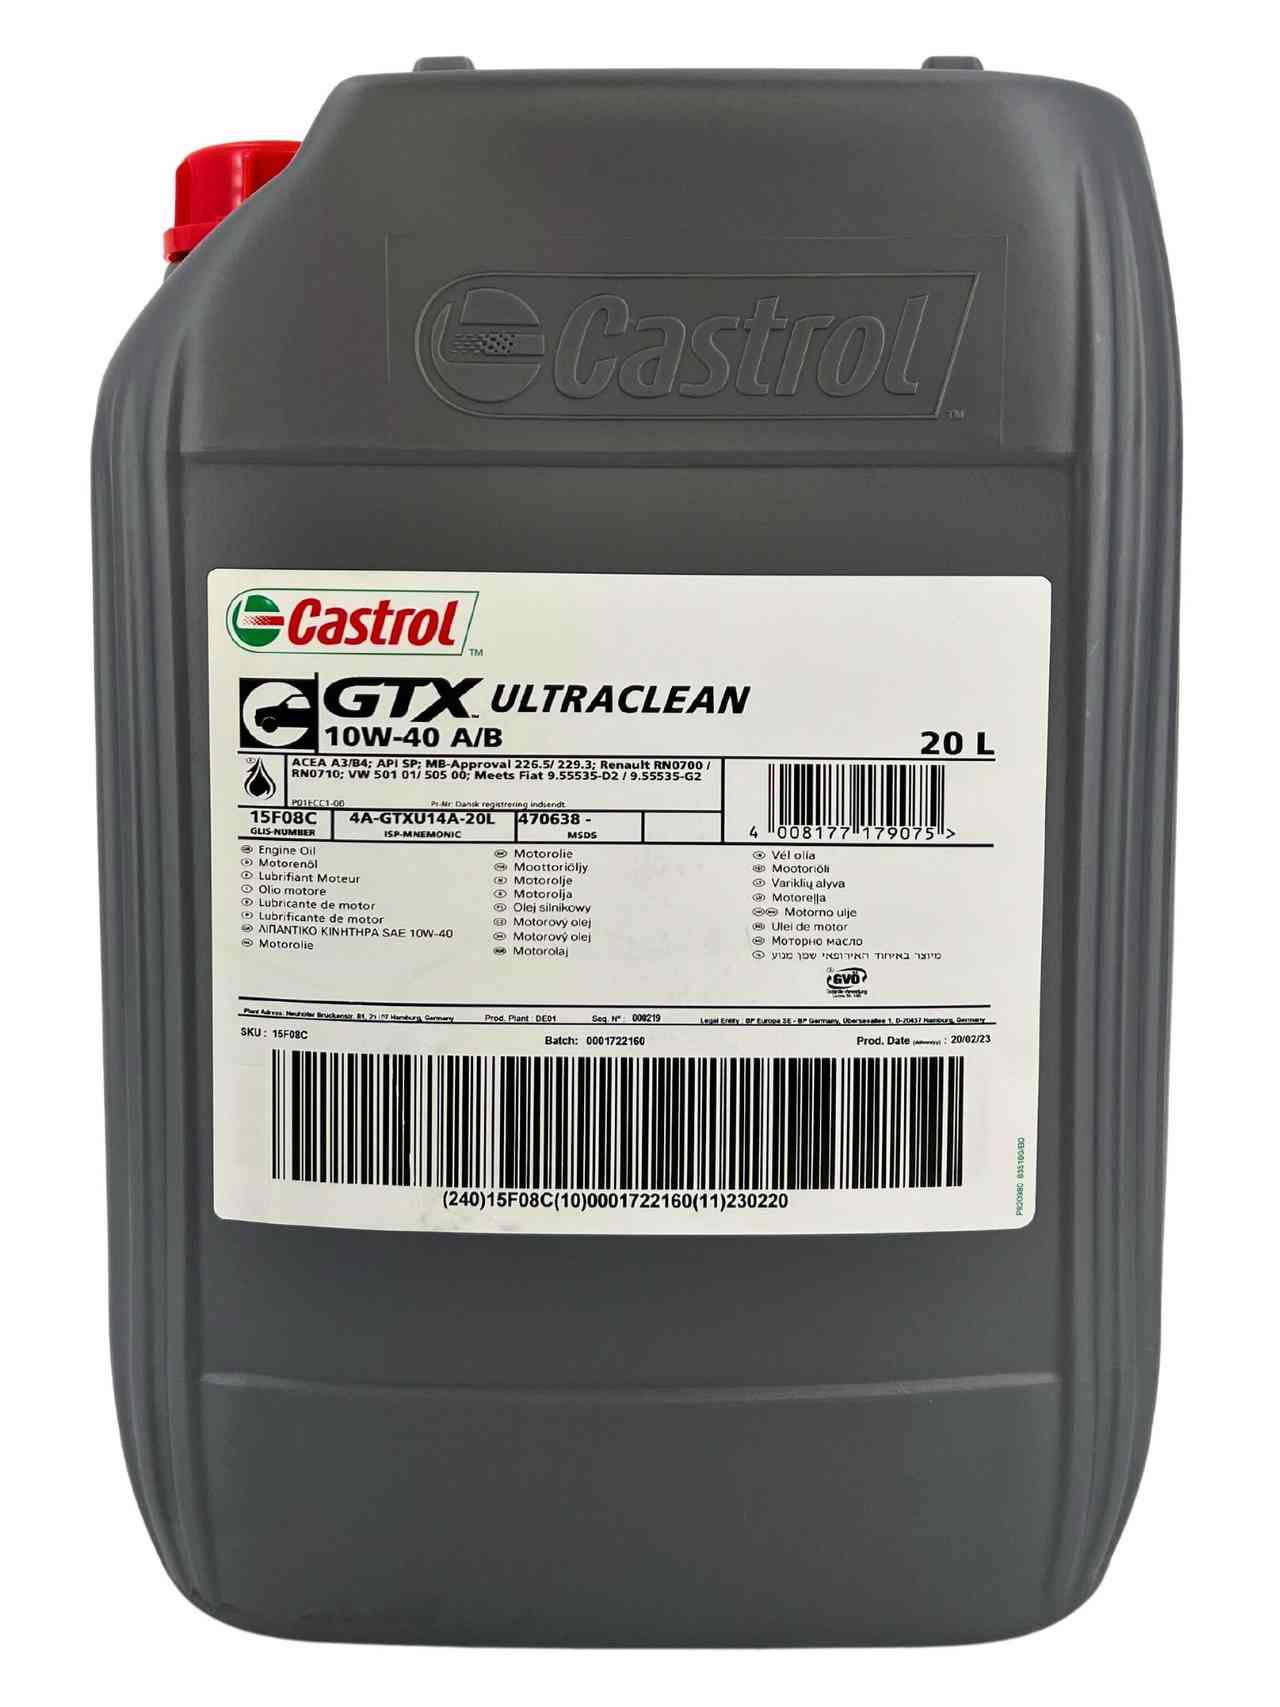 Castrol GTX Ultraclean 10W-40 A/B 20 Liter